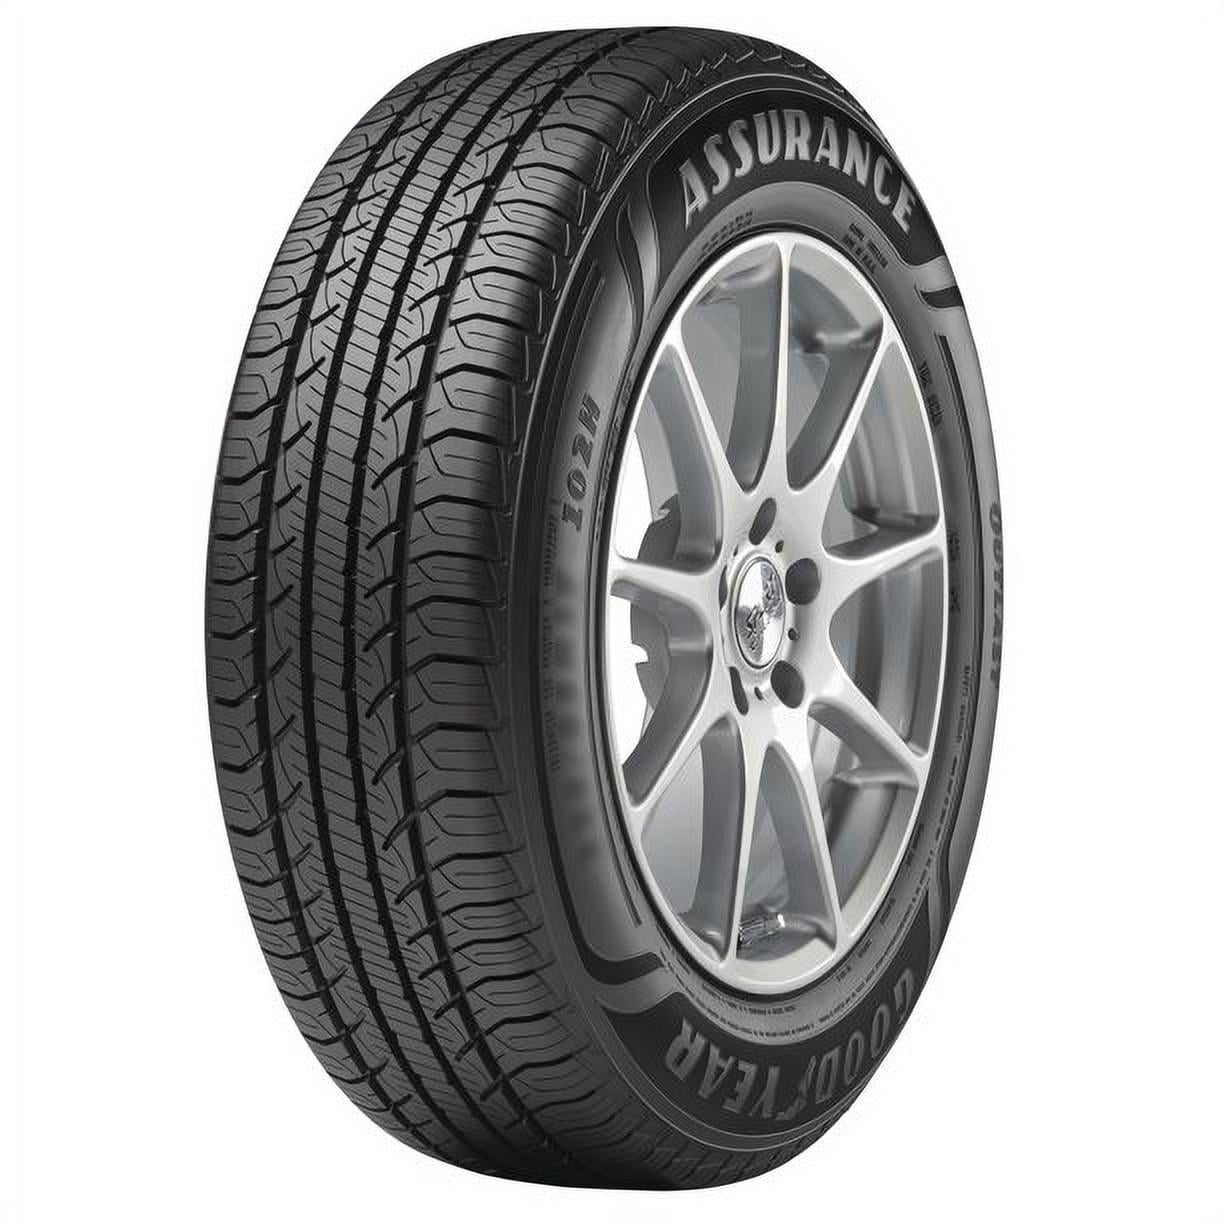 Goodyear Assurance Outlast Discount Tire